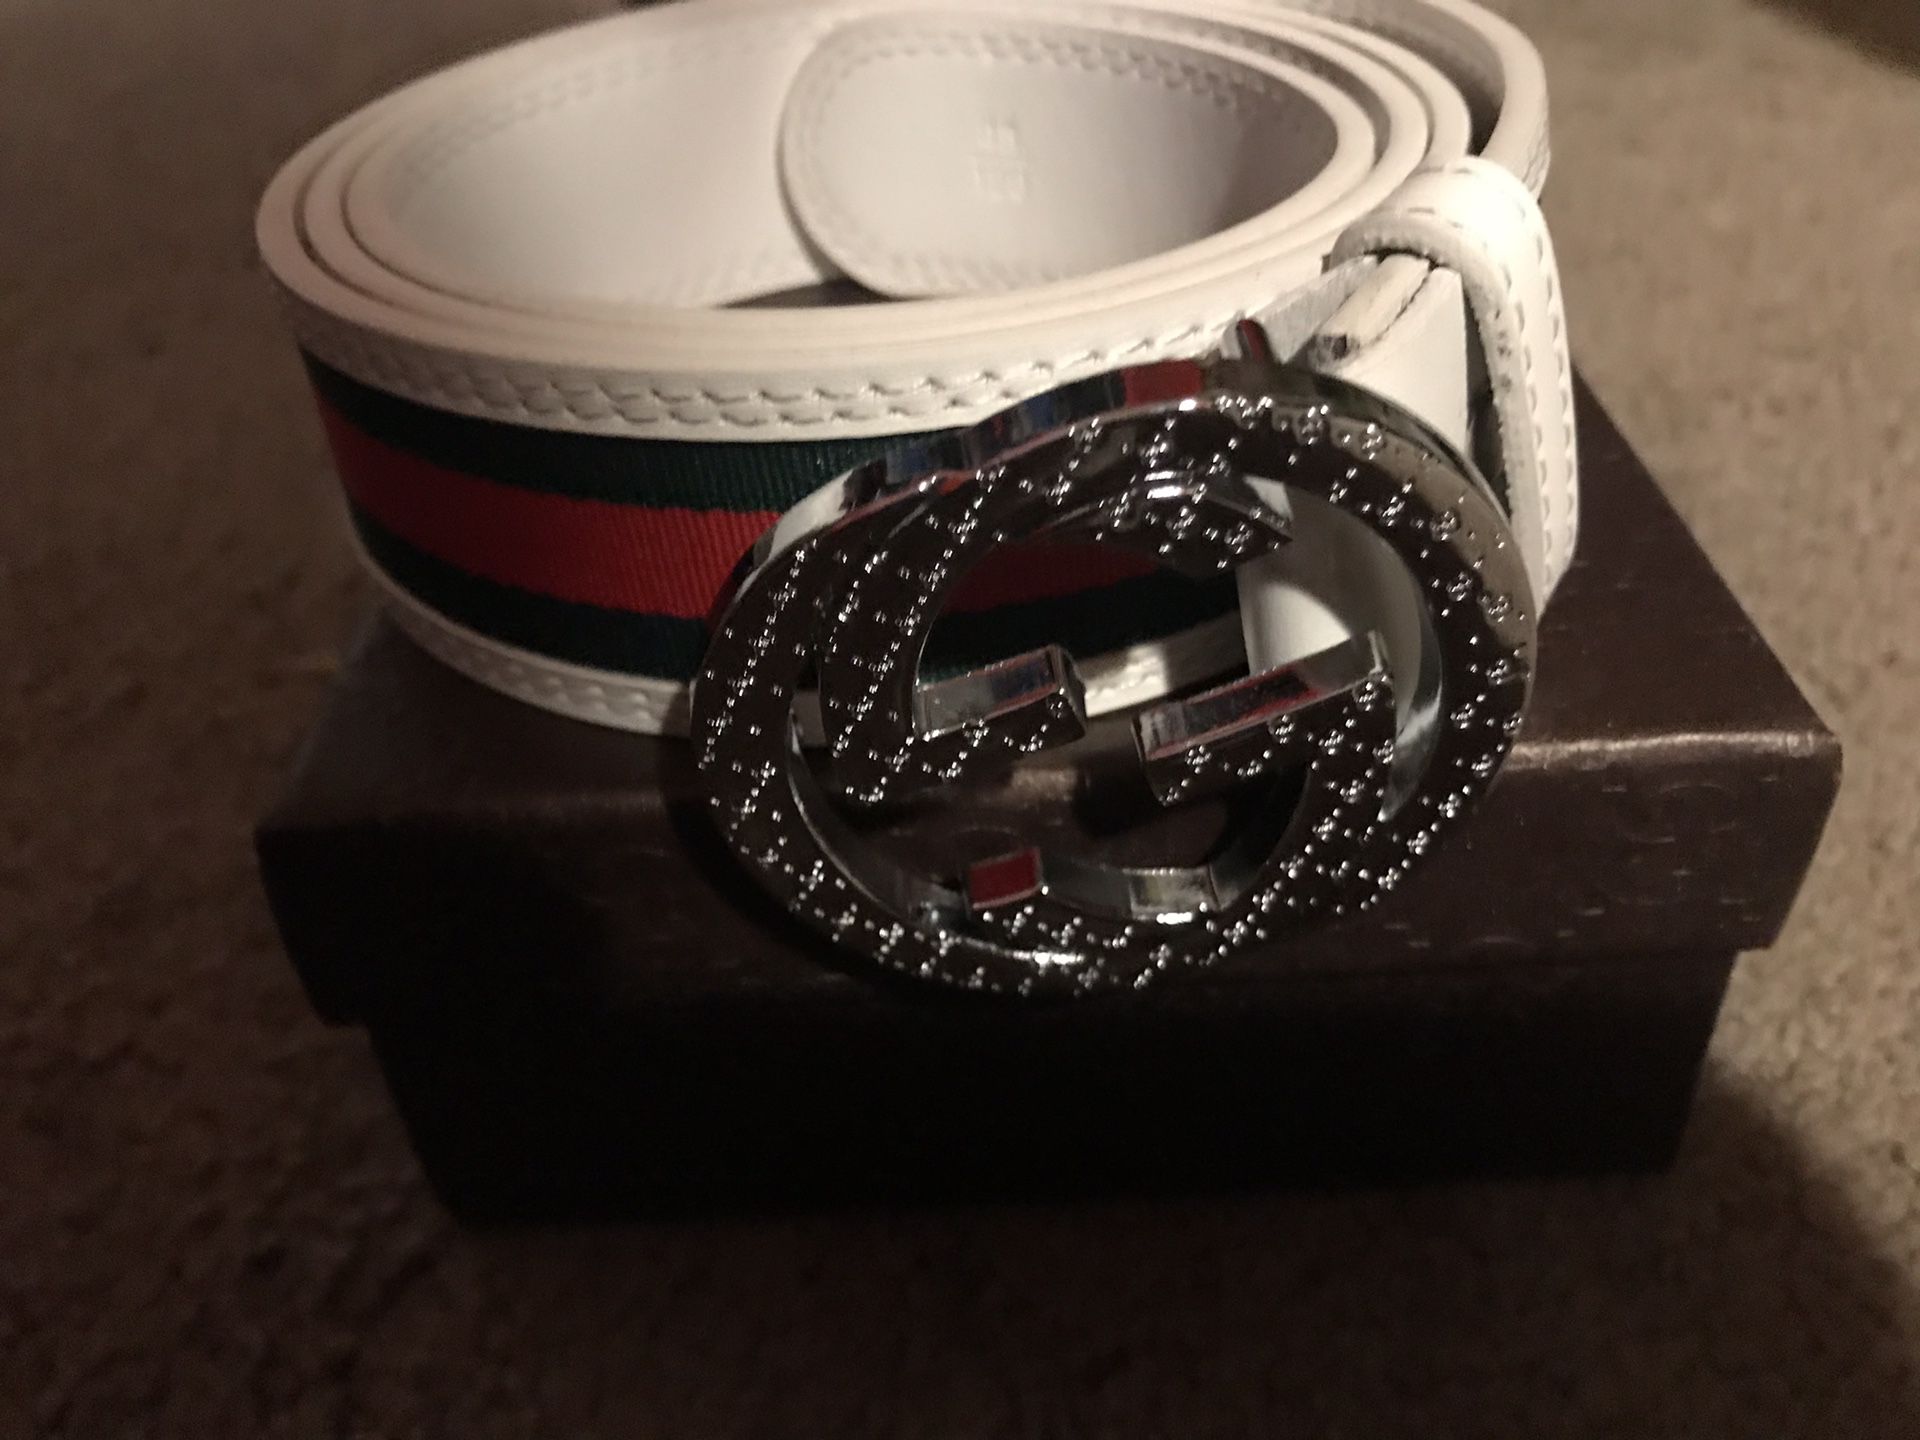 Gucci belt